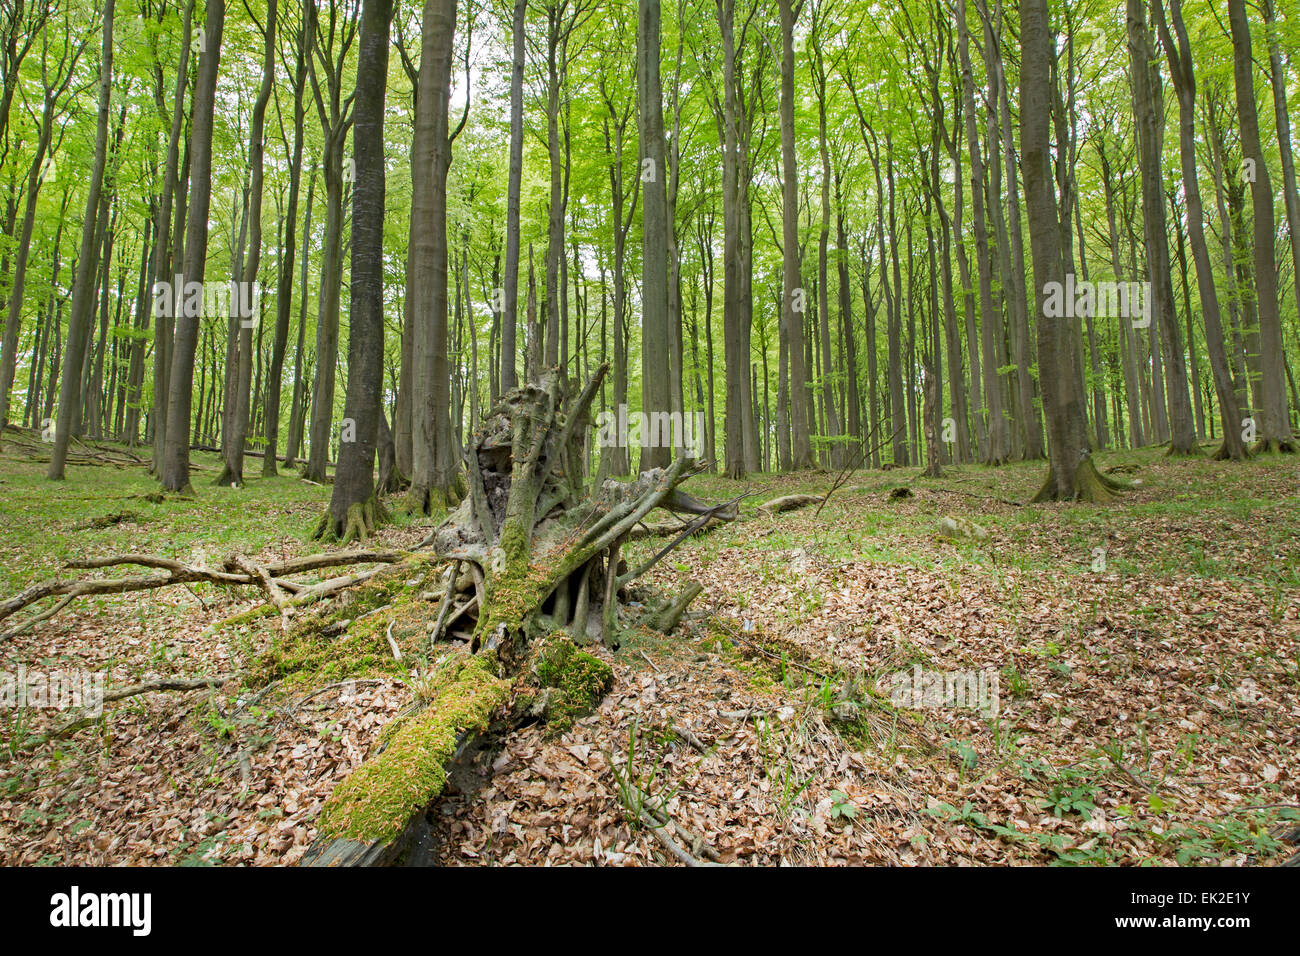 Bosque de hayas (Fagus sylvatica), el Parque Nacional de Jasmund, Sitio del Patrimonio Mundial de la UNESCO, Rügen, Mecklemburgo-Pomerania Occidental, Alemania Foto de stock